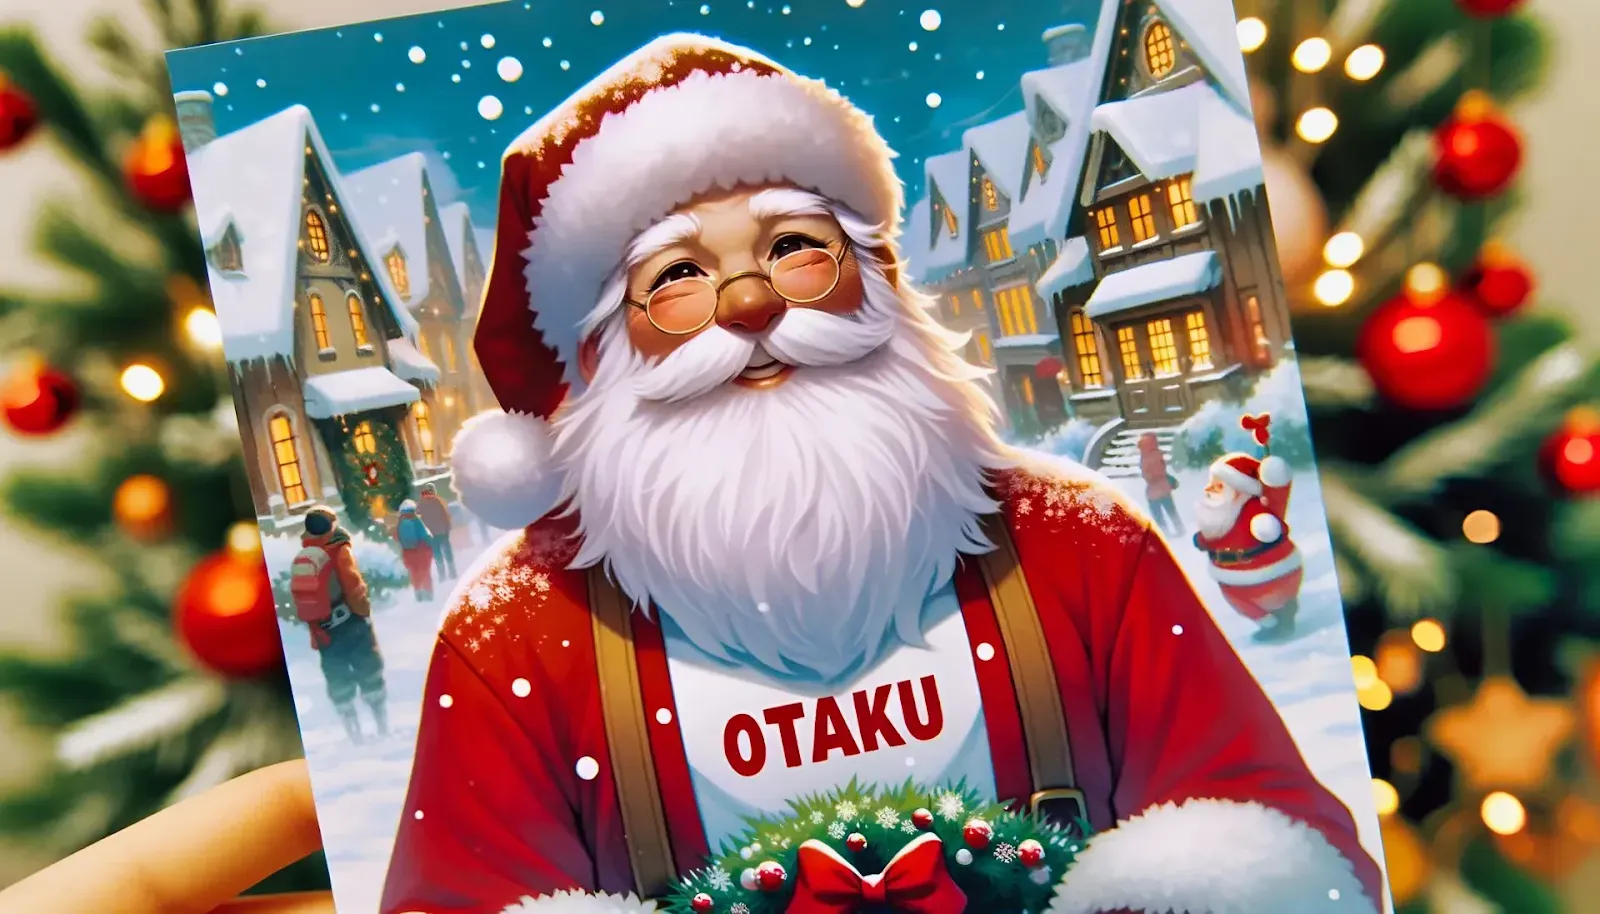 Świąteczna kartka z życzeniami z uśmiechniętym Mikołajem w okularach i koszulce z napisem Otaku. Mikoła znajduje się na zimowej, miejskiej ulicy.